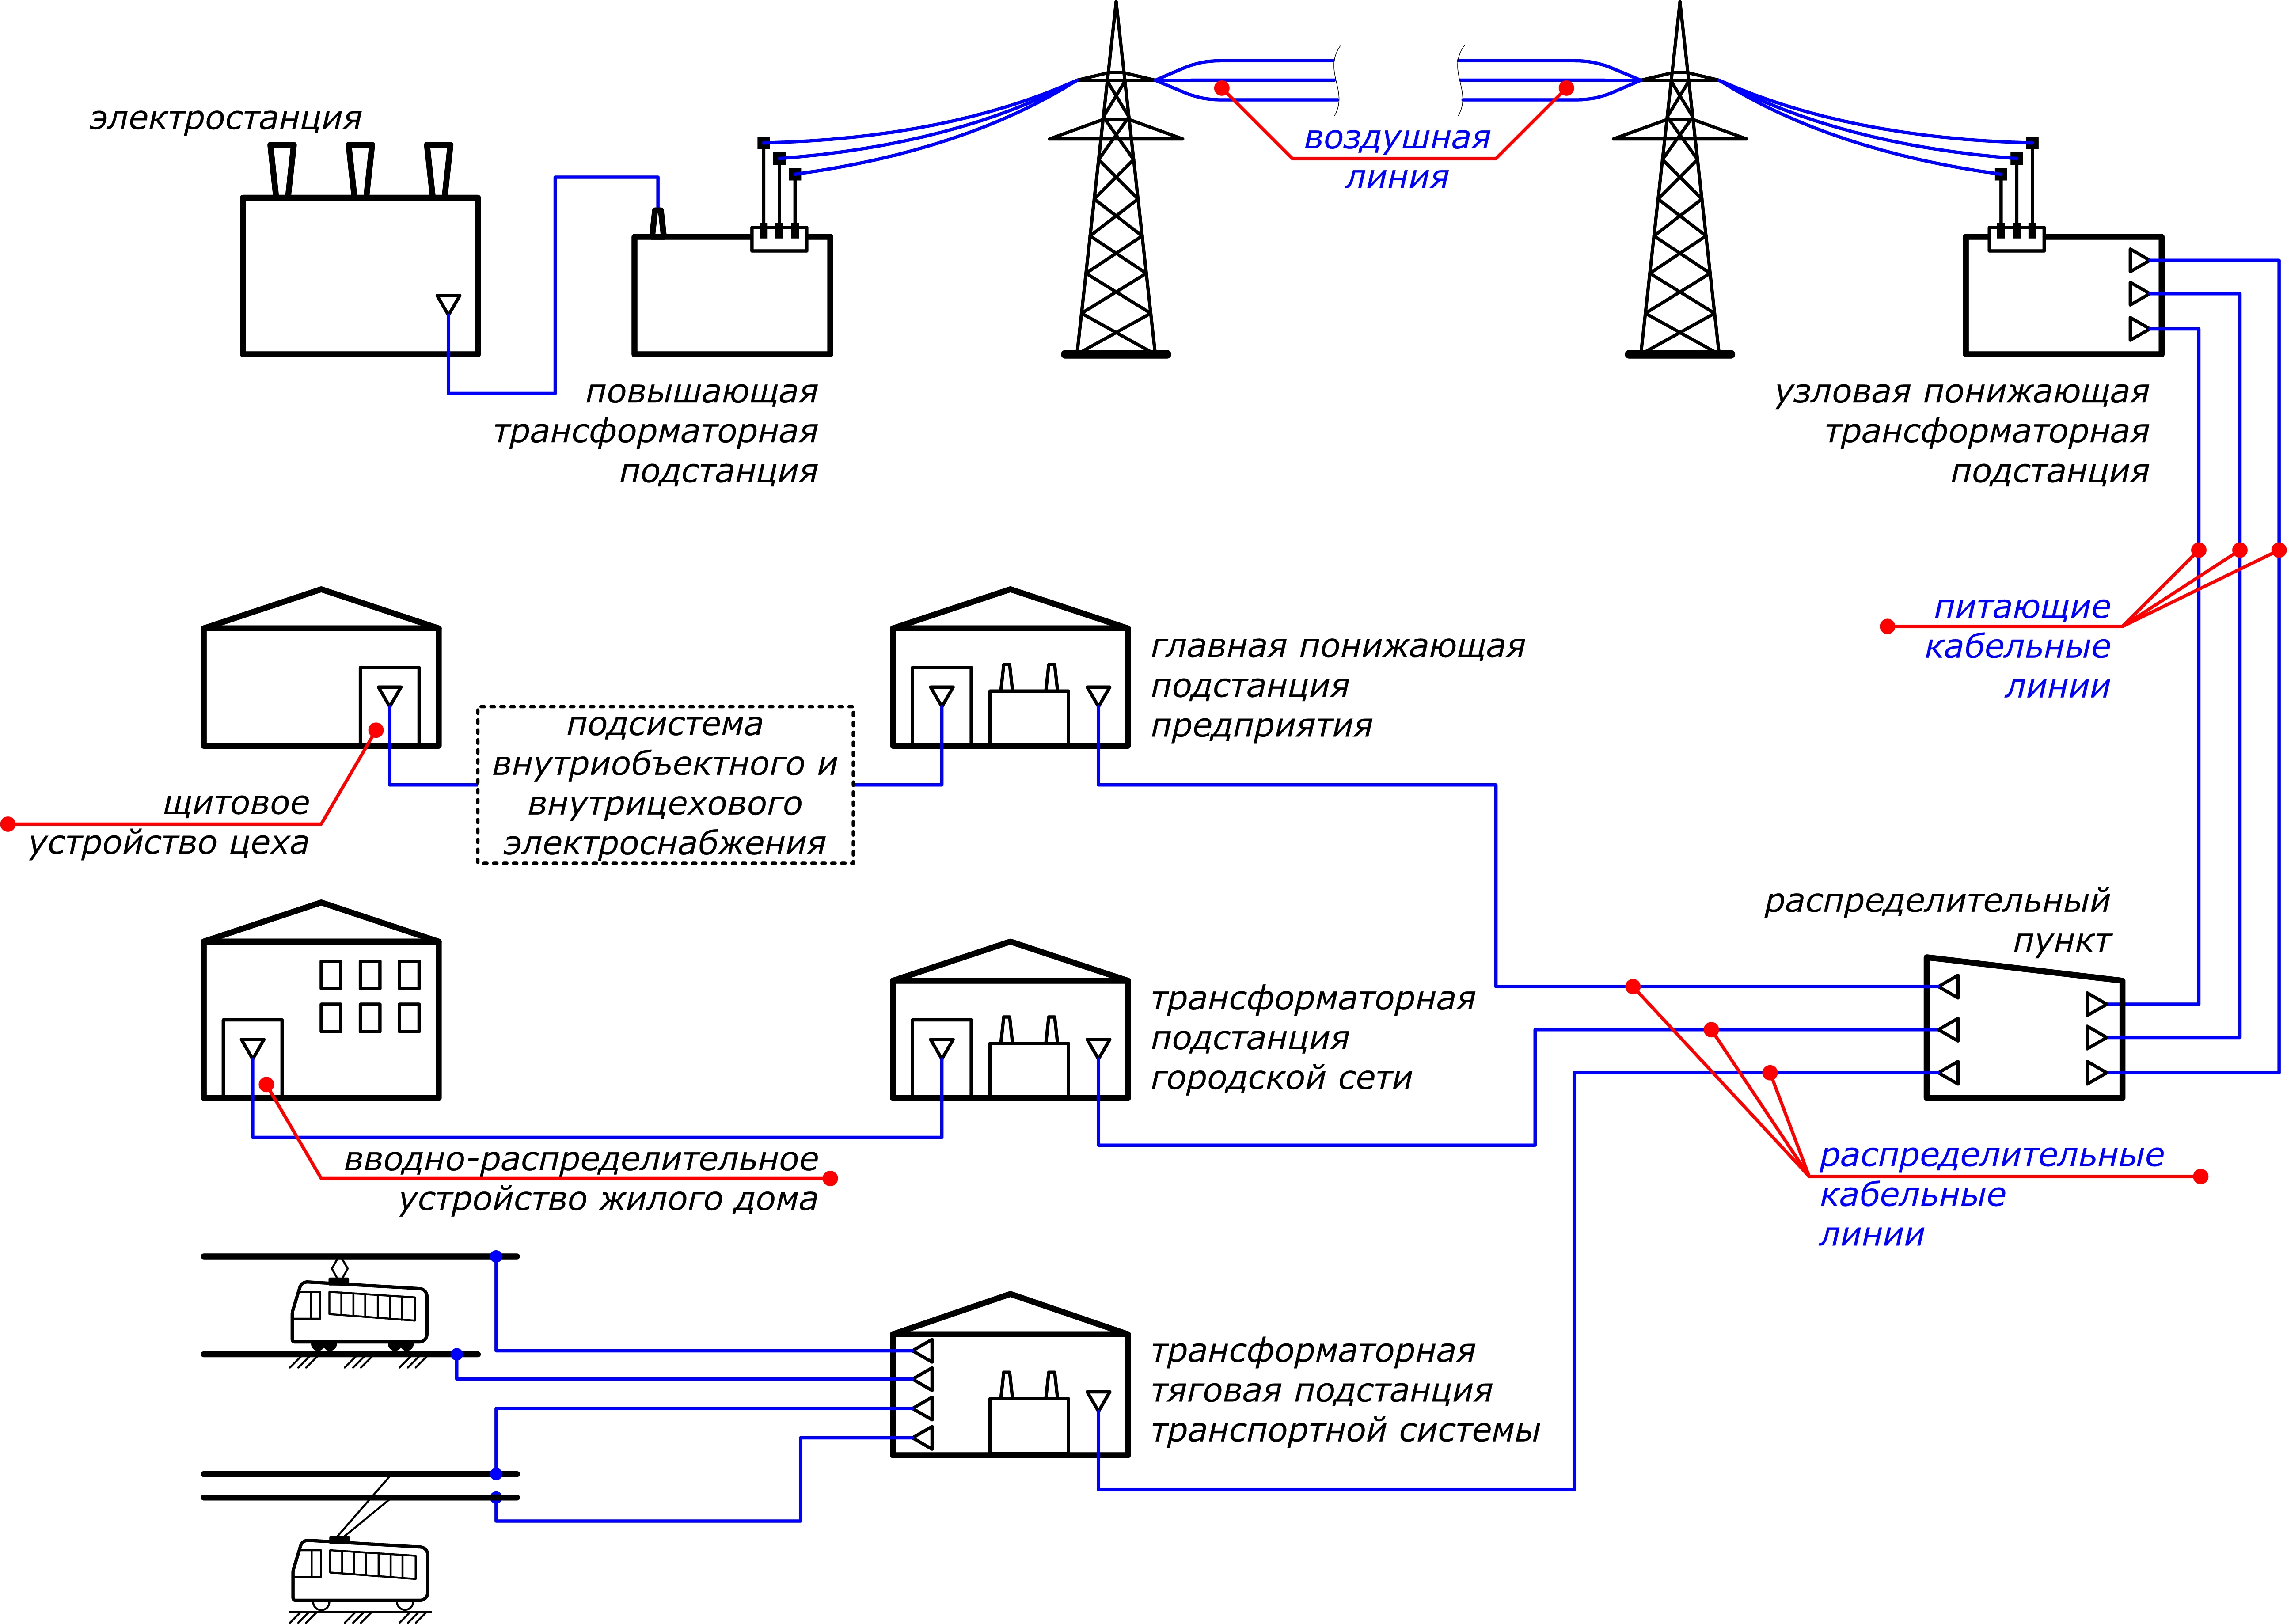 Первая группа электроснабжения. Схема подключения электроснабжения. Принципиальная схема распределения электроэнергии внутри объекта. Схема подключения потребителя к электрическим сетям. Схема распределения электроэнергии от электростанции к потребителю.